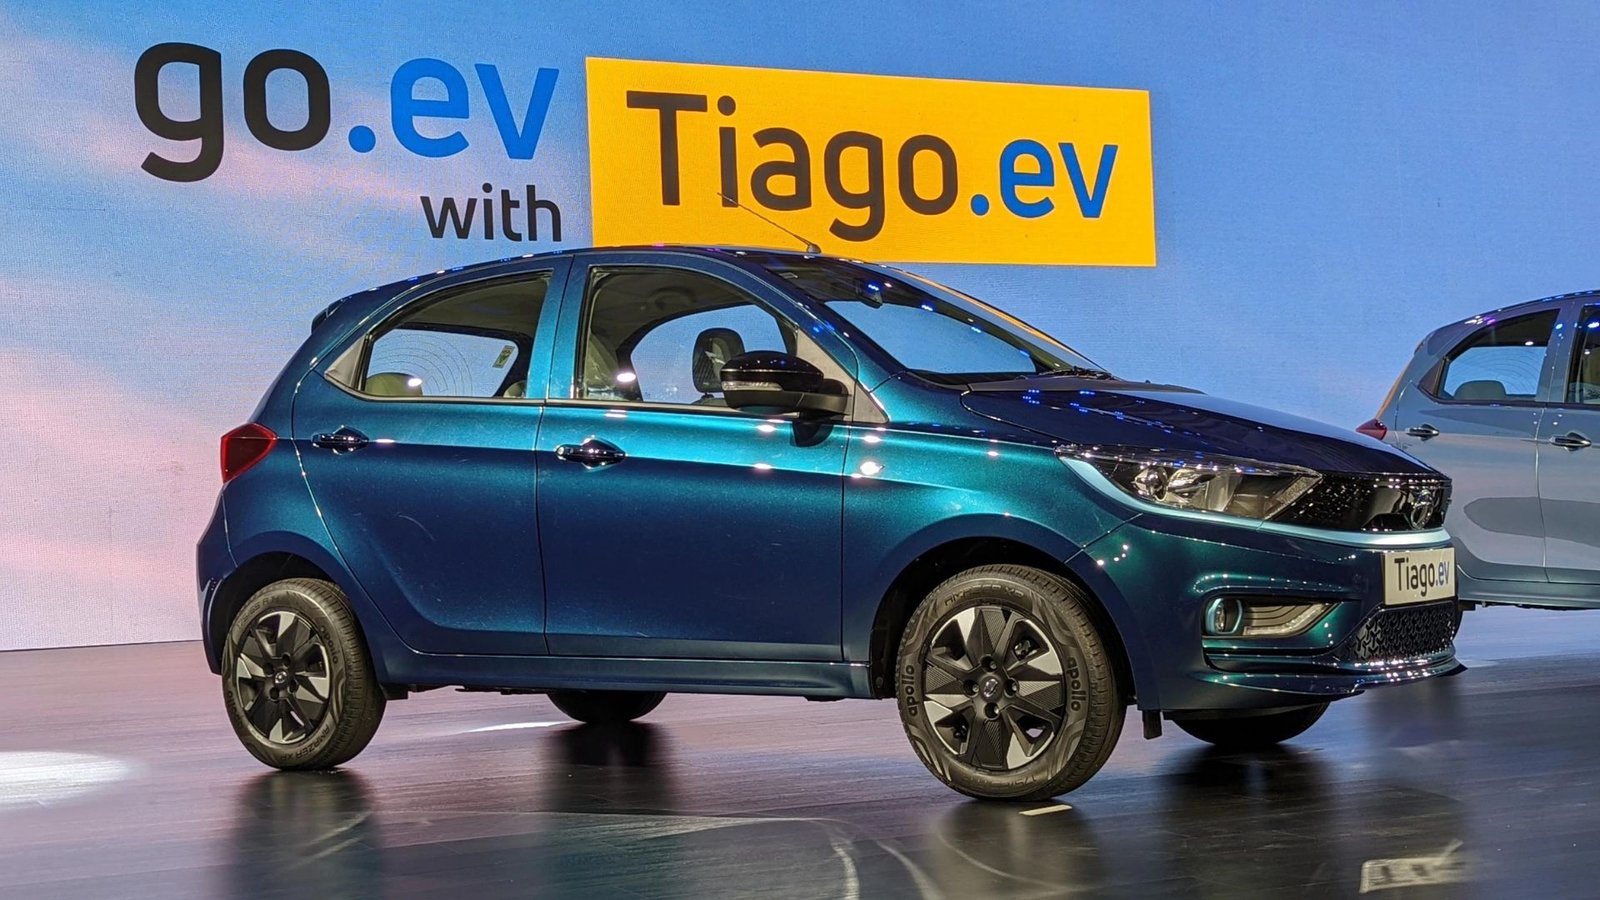 Tata Tiago EV Electric Car